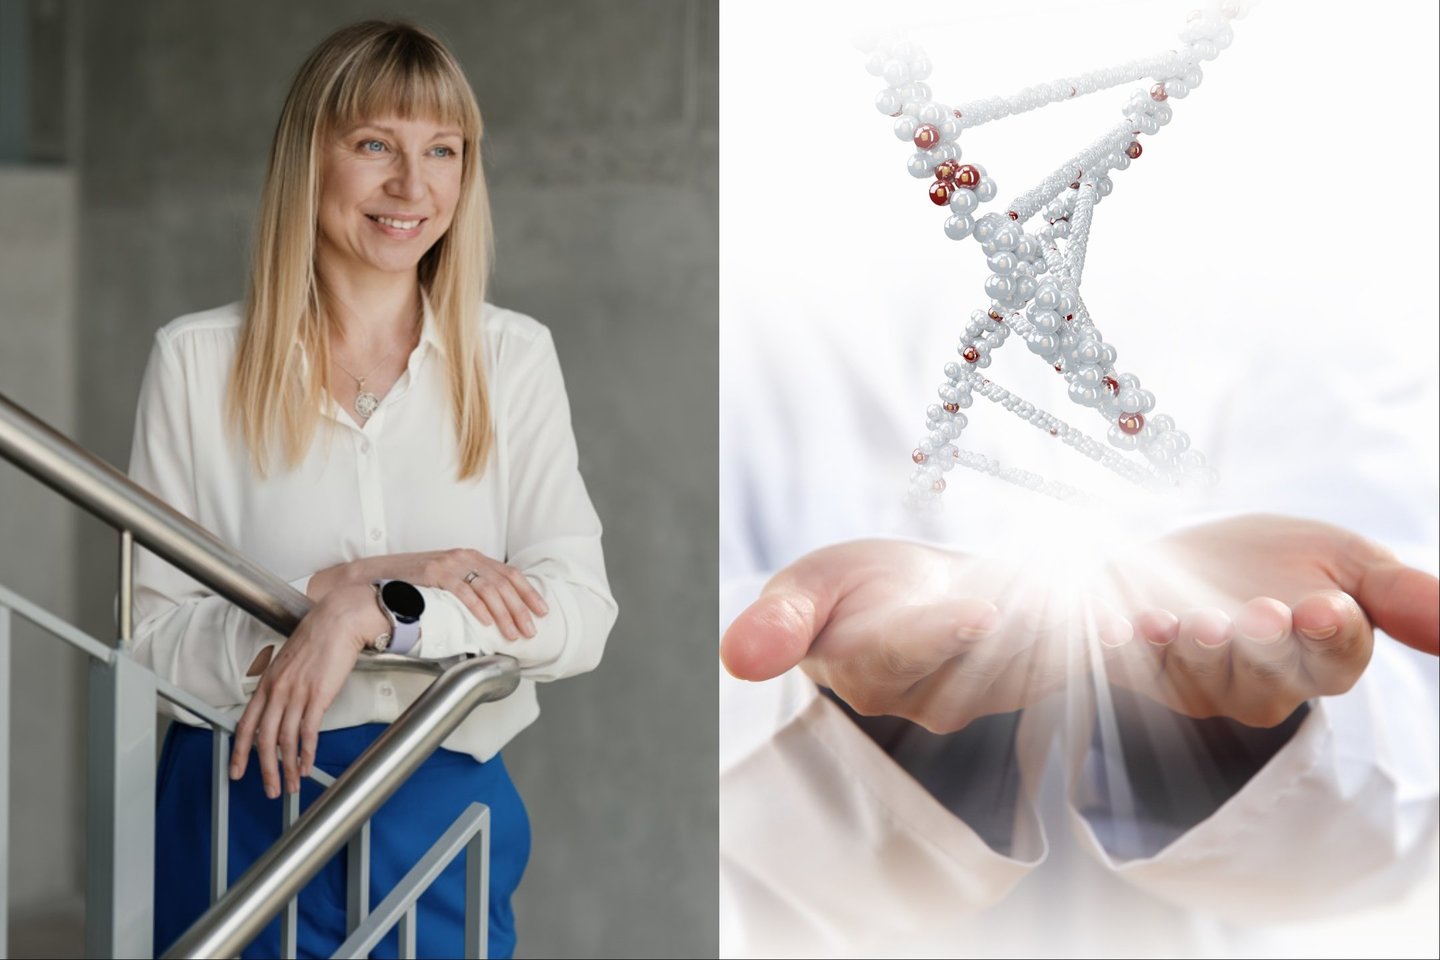  Biochemijos mokslų daktarė Miglė Tomkuvienė į mūsų organizmą žvelgia kitaip – ji tyrinėja, kas vyksta genuose molekulių lygmenyje.<br> VU GMC, 123rf iliustr., lrytas.lt mont.